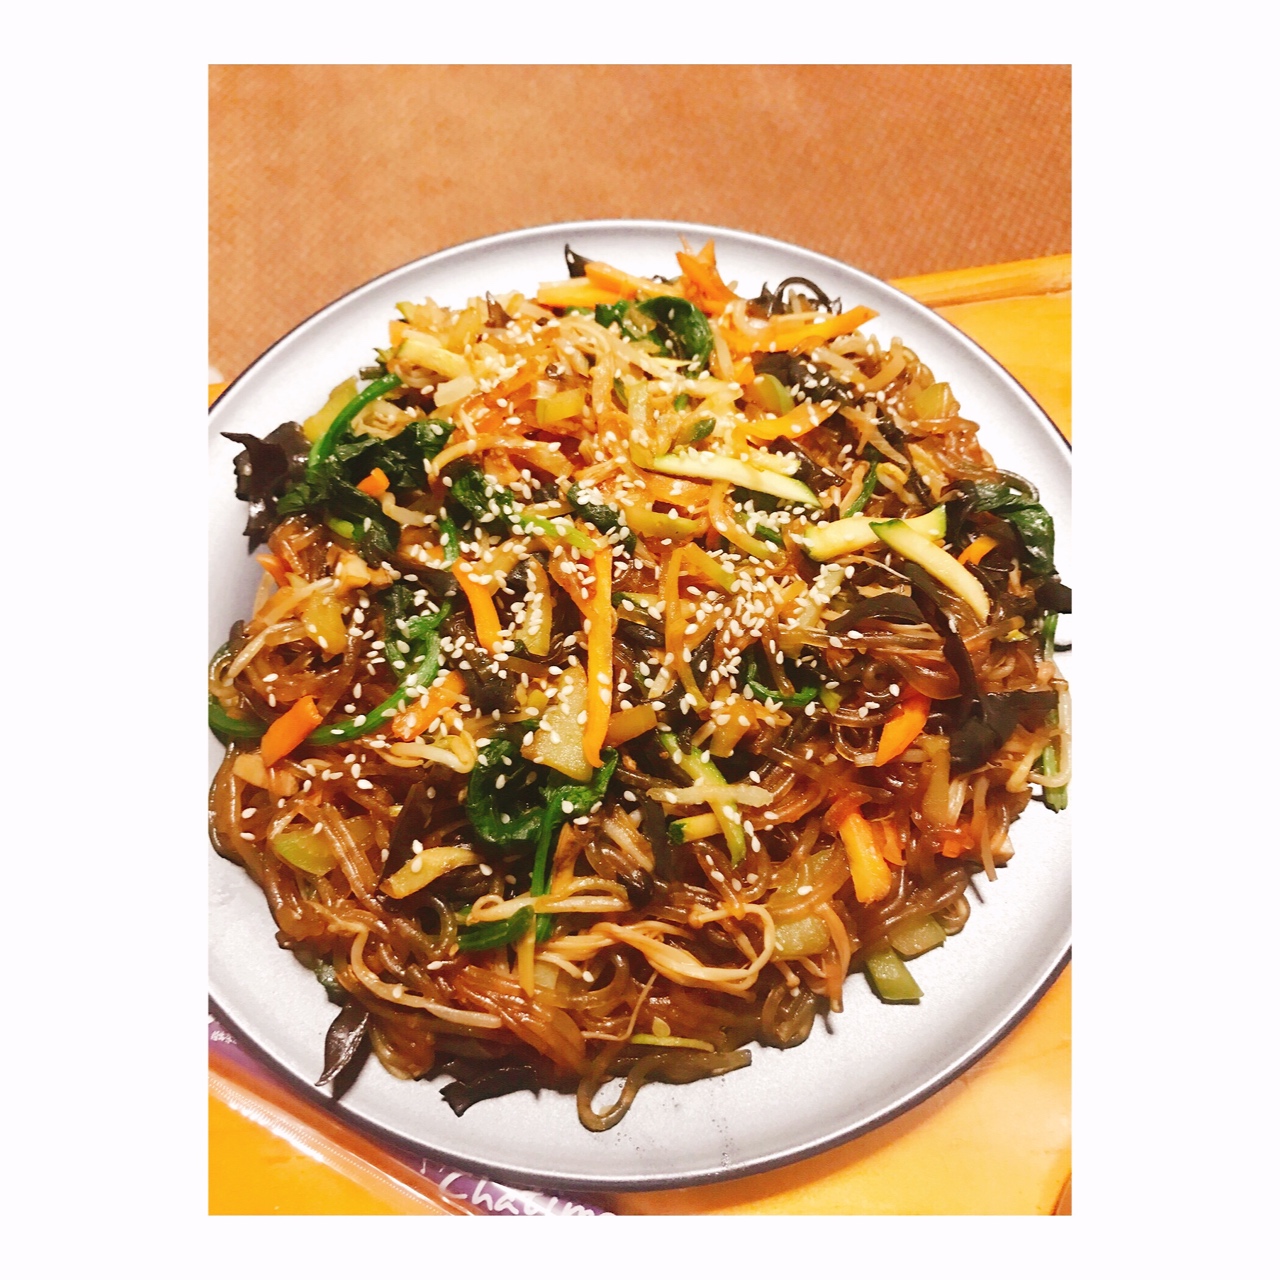 韩式粉丝炒杂菜 Korean Style Glass Noodles with Vegetables